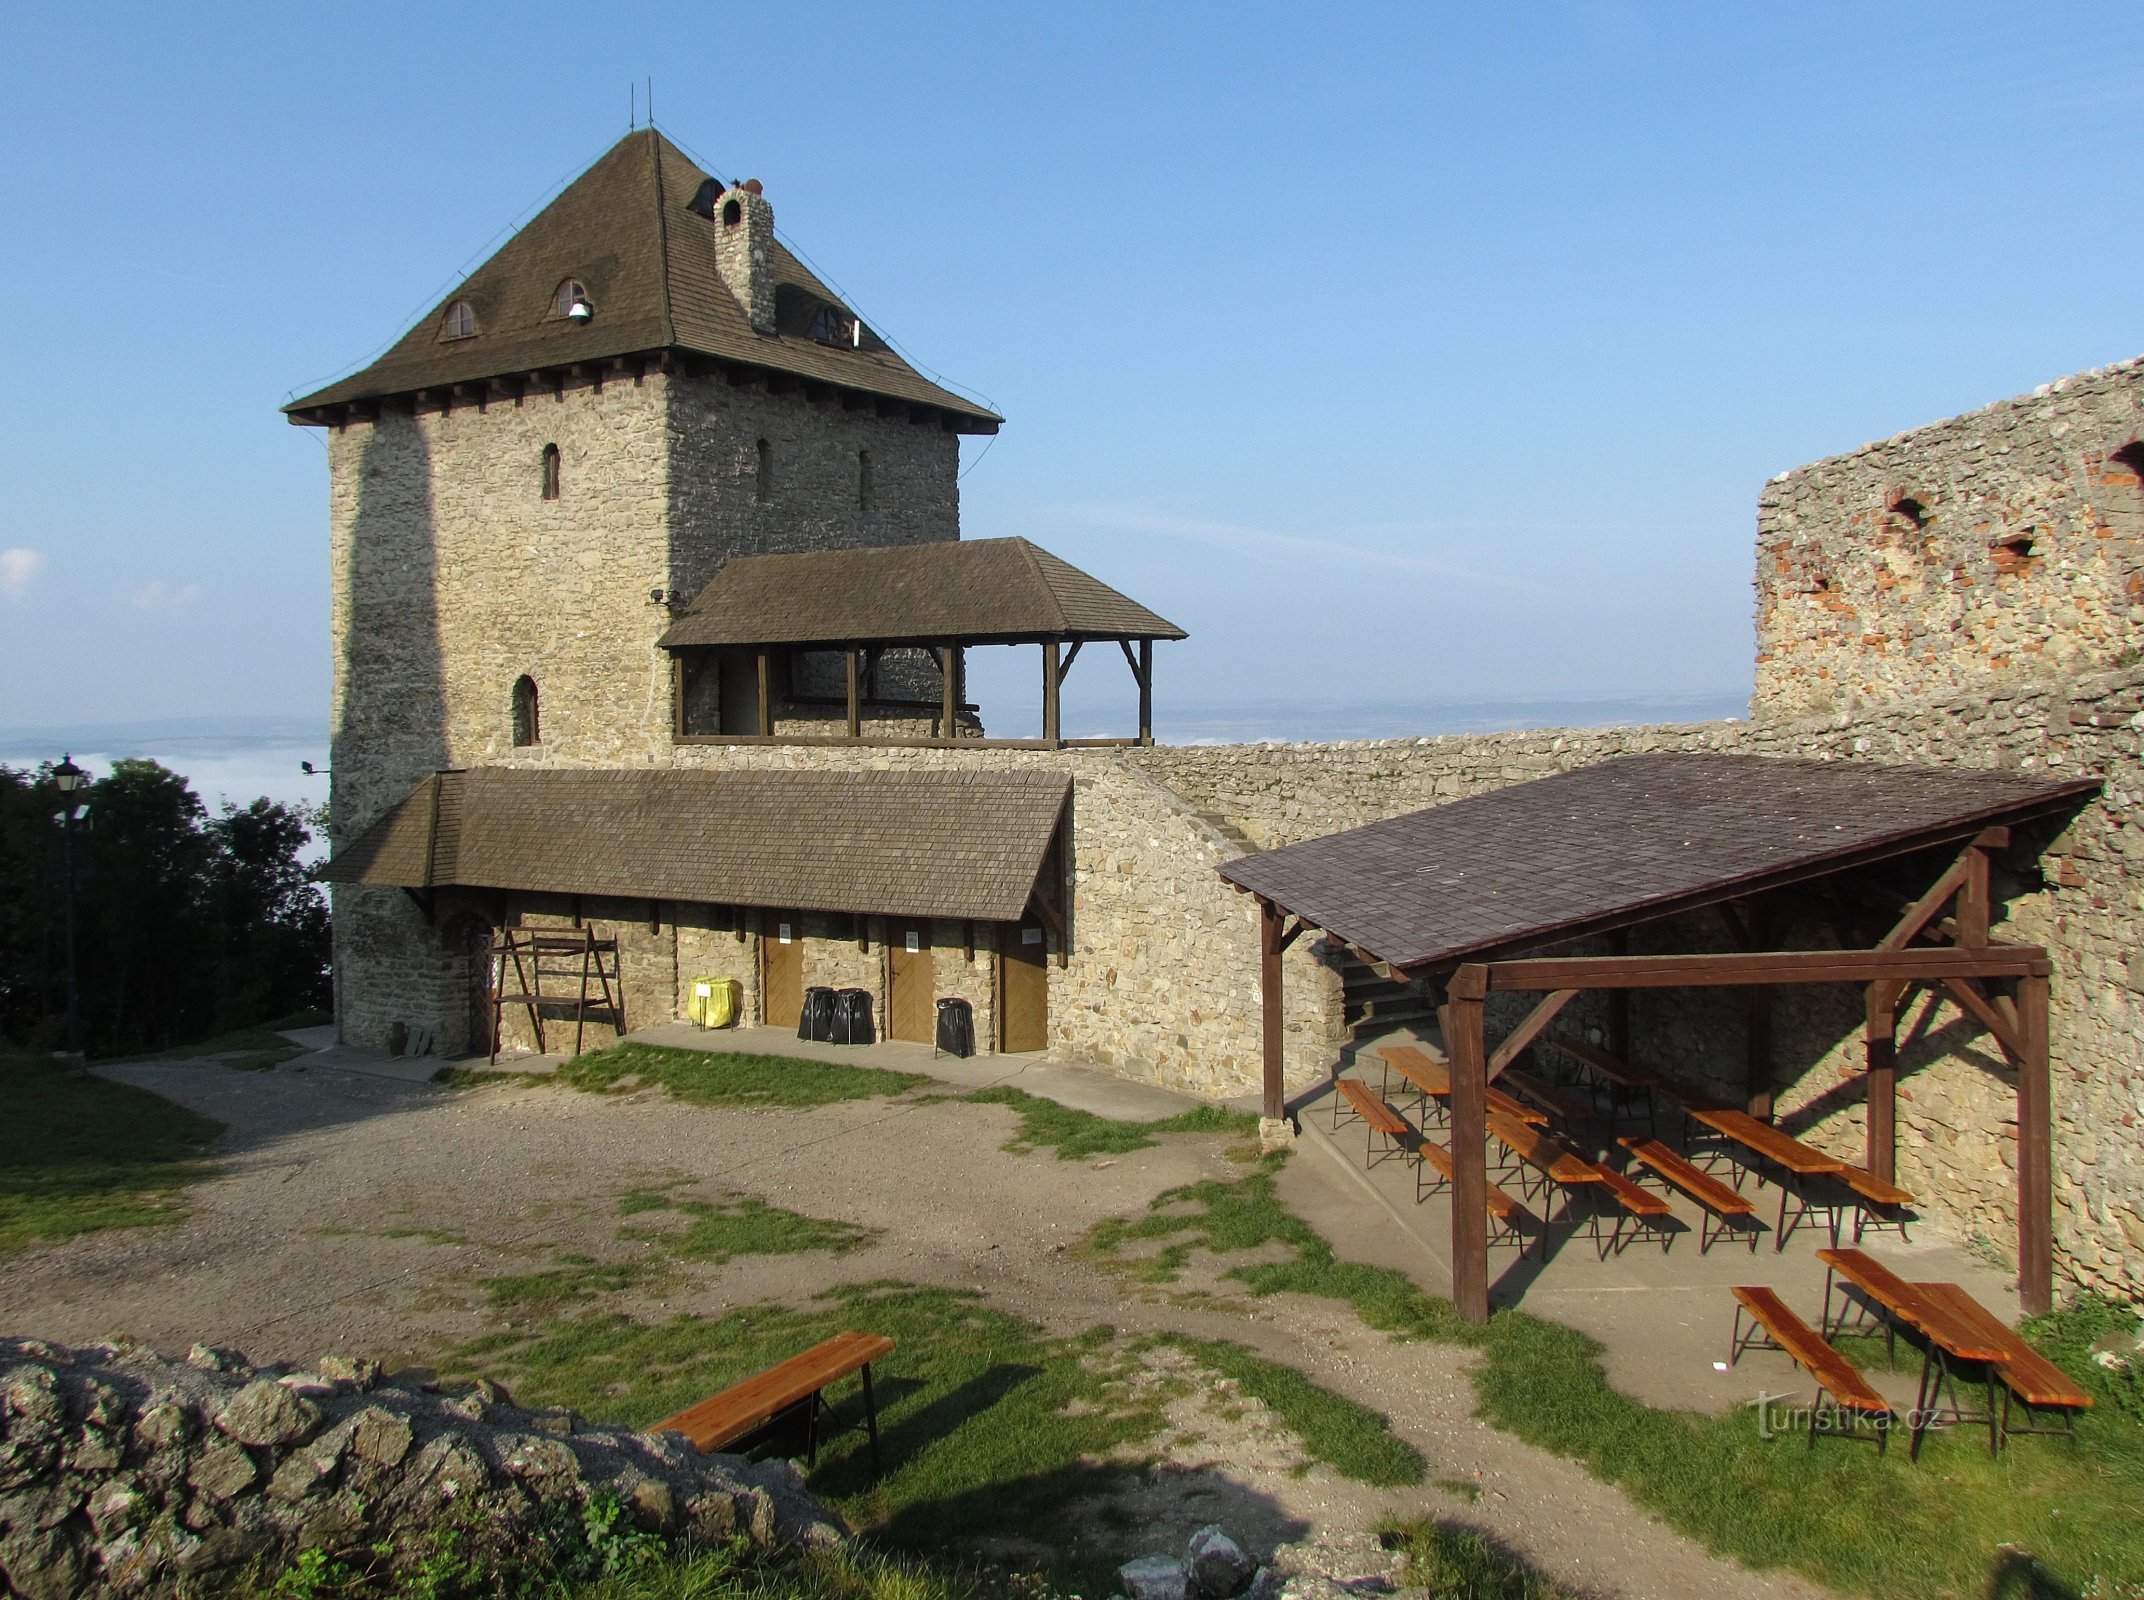 Nové Jičínistä Starý Jičínin linnan raunioihin